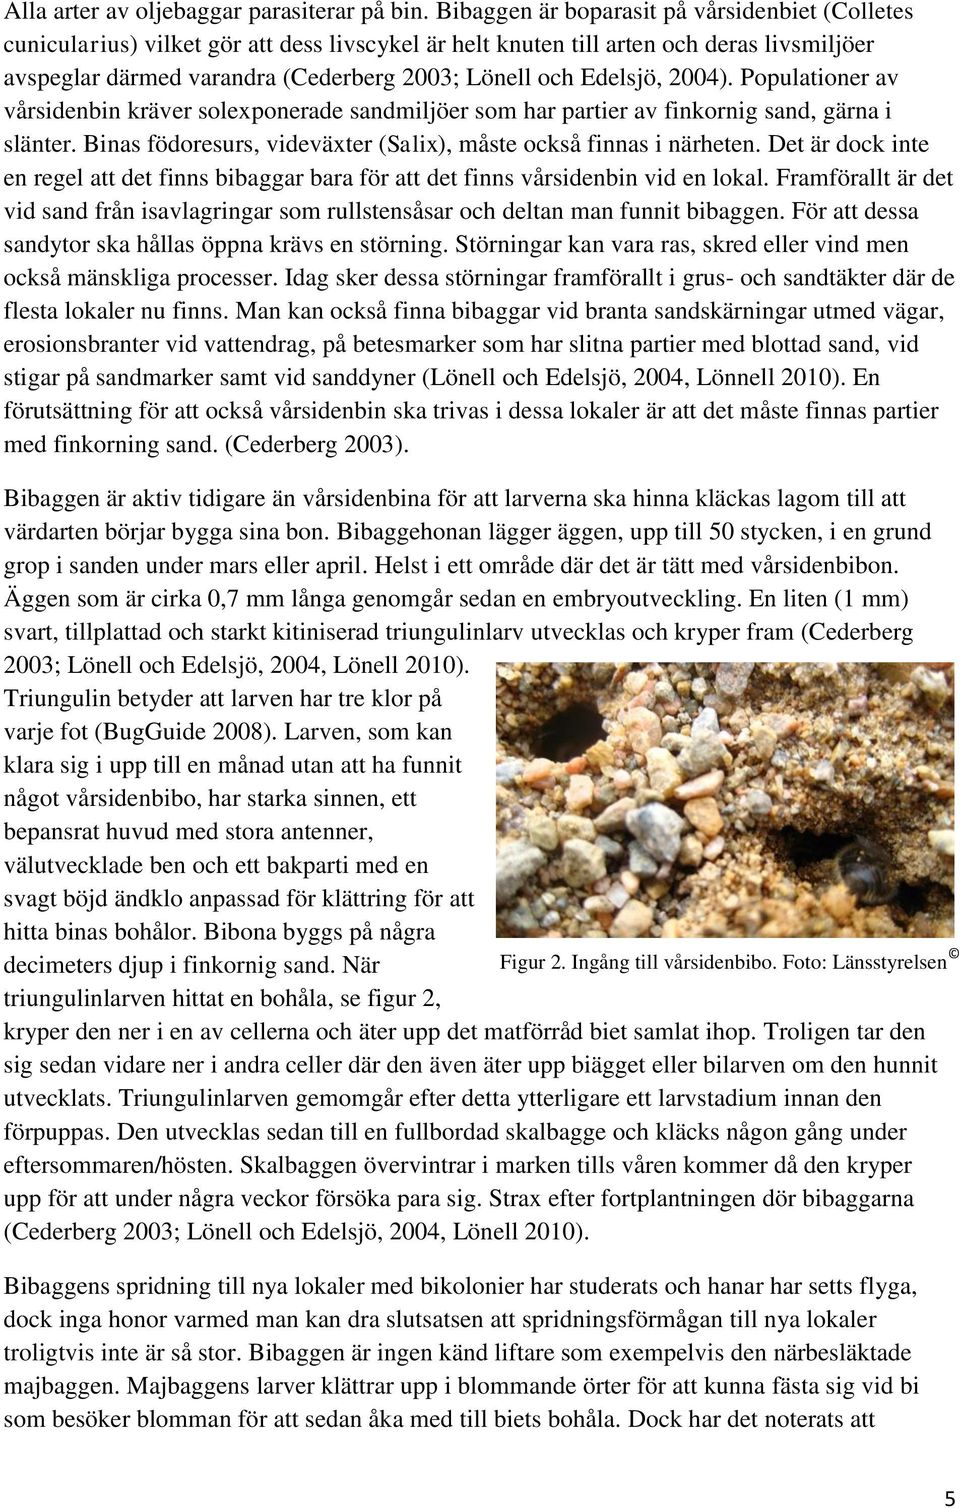 Edelsjö, 2004). Populationer av vårsidenbin kräver solexponerade sandmiljöer som har partier av finkornig sand, gärna i slänter. Binas födoresurs, videväxter (Salix), måste också finnas i närheten.